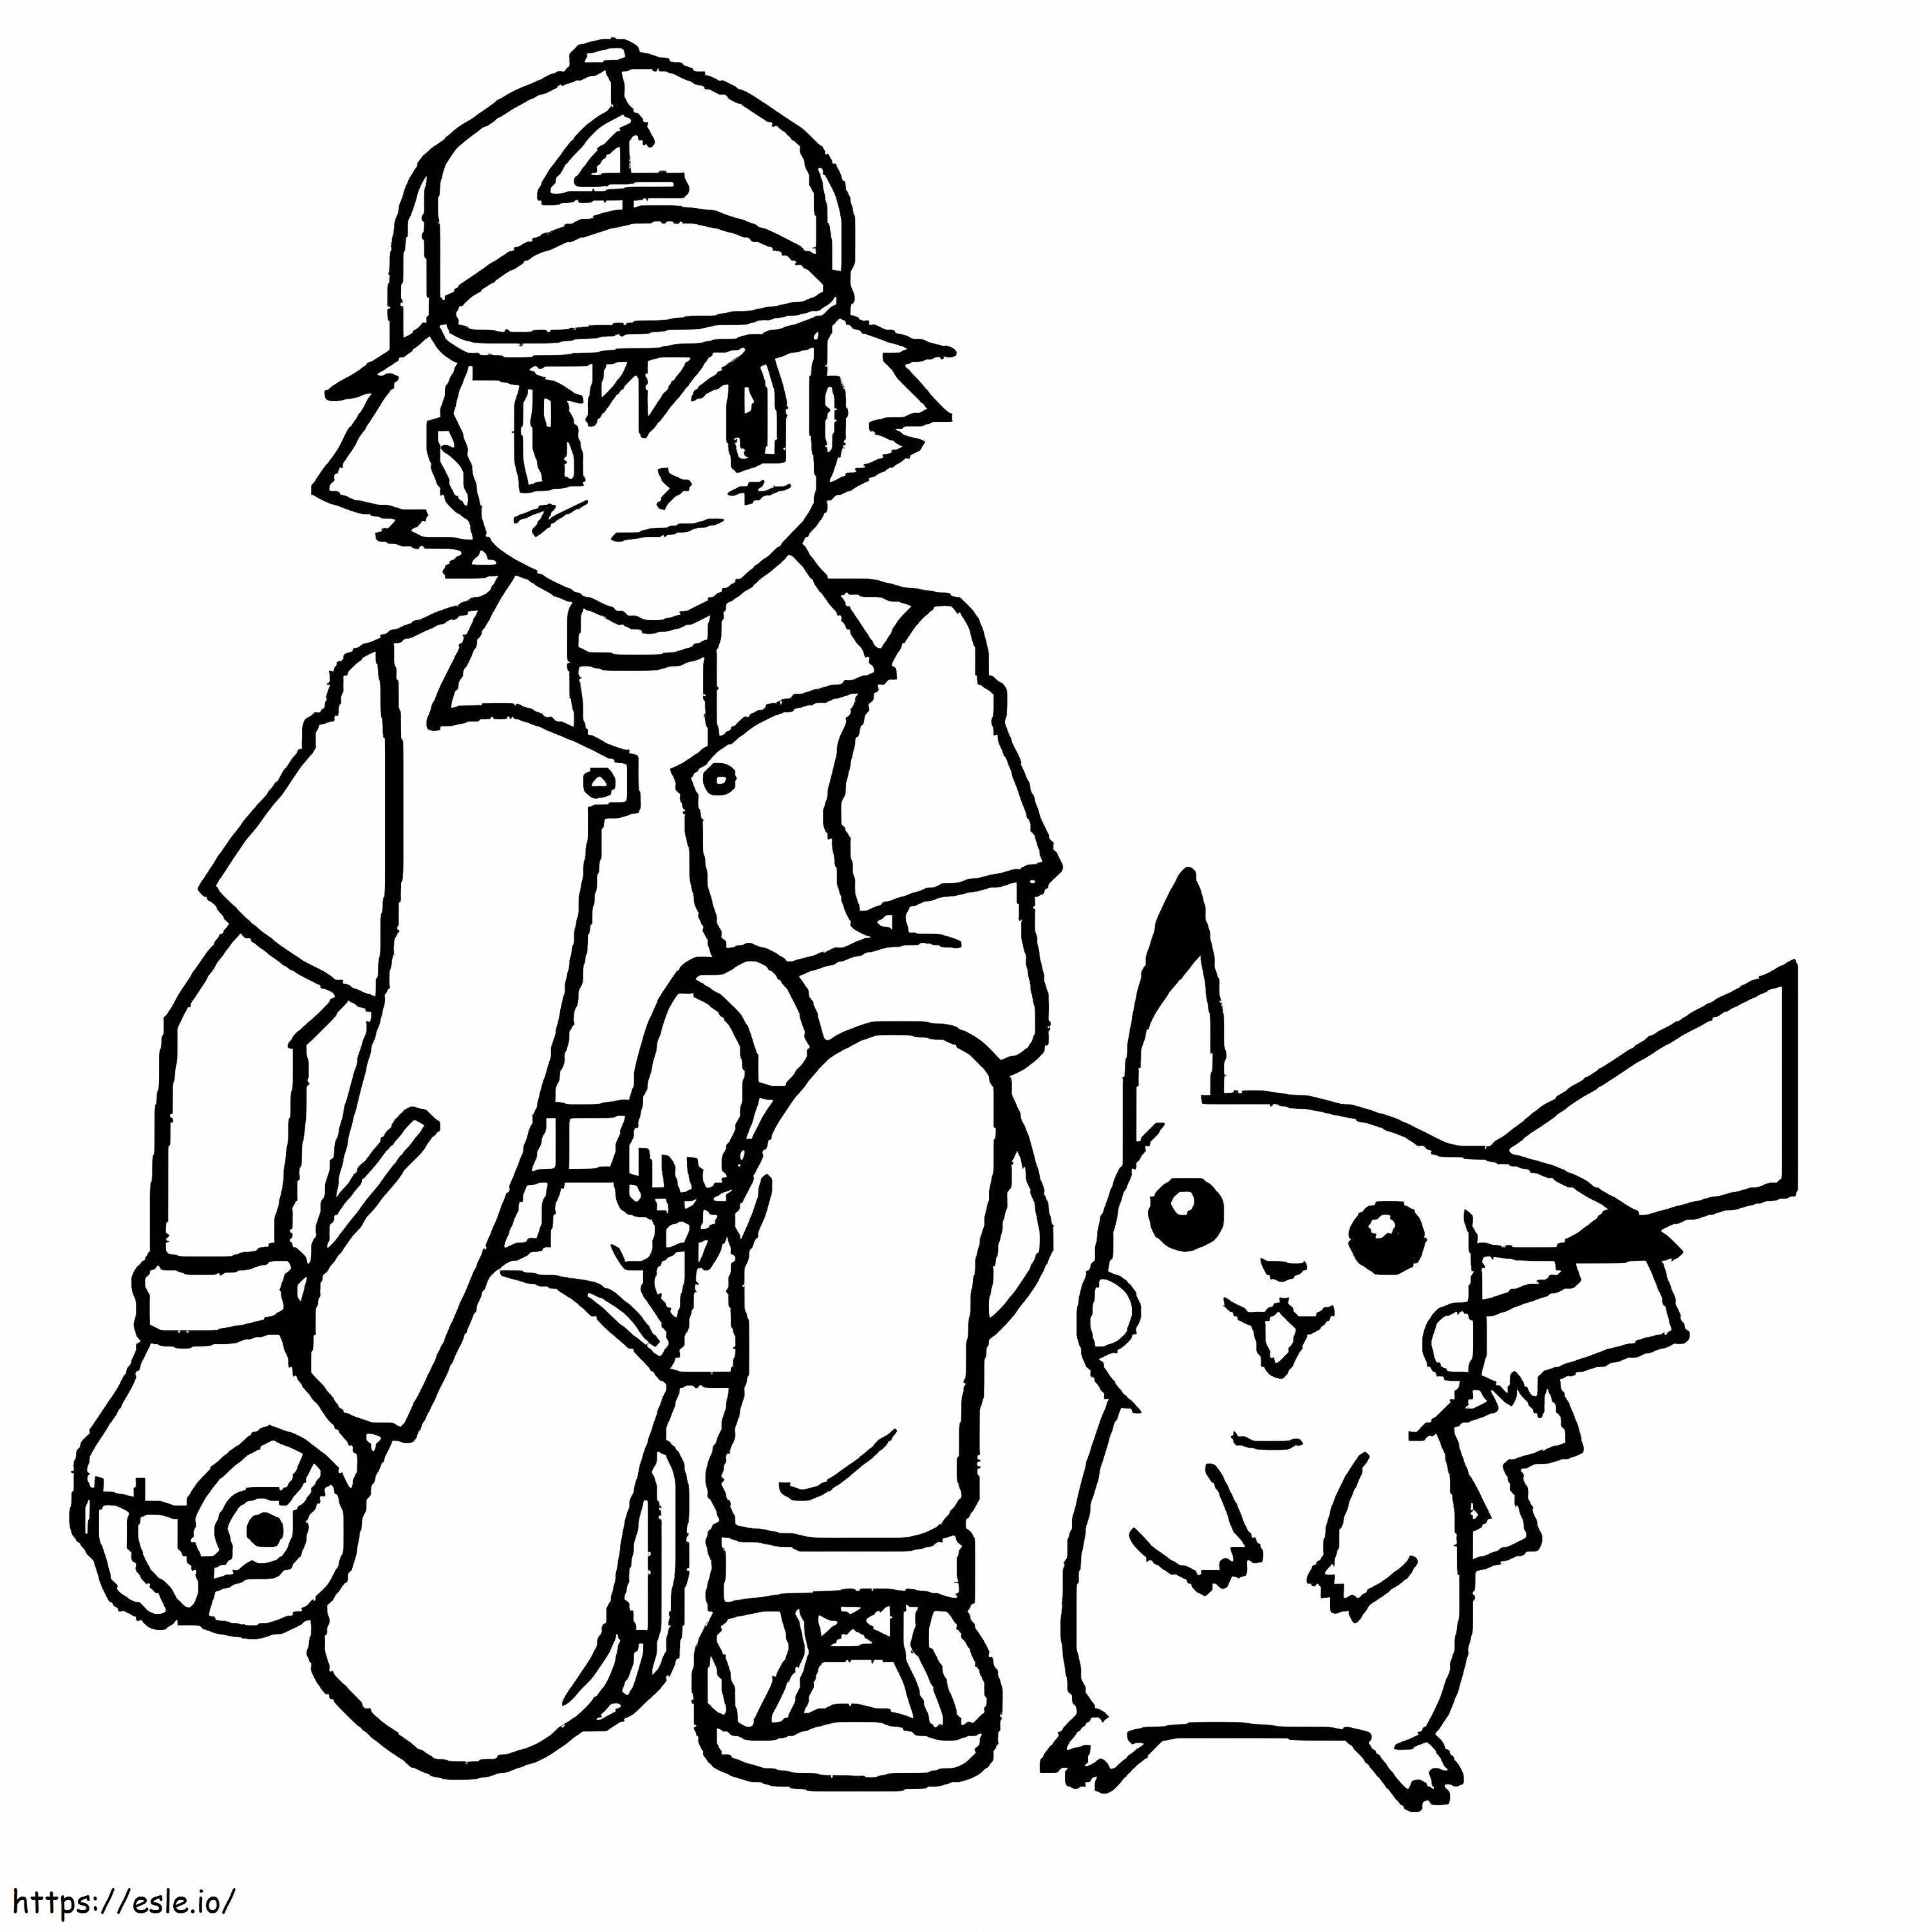 Satoshi și Pikachu de colorat